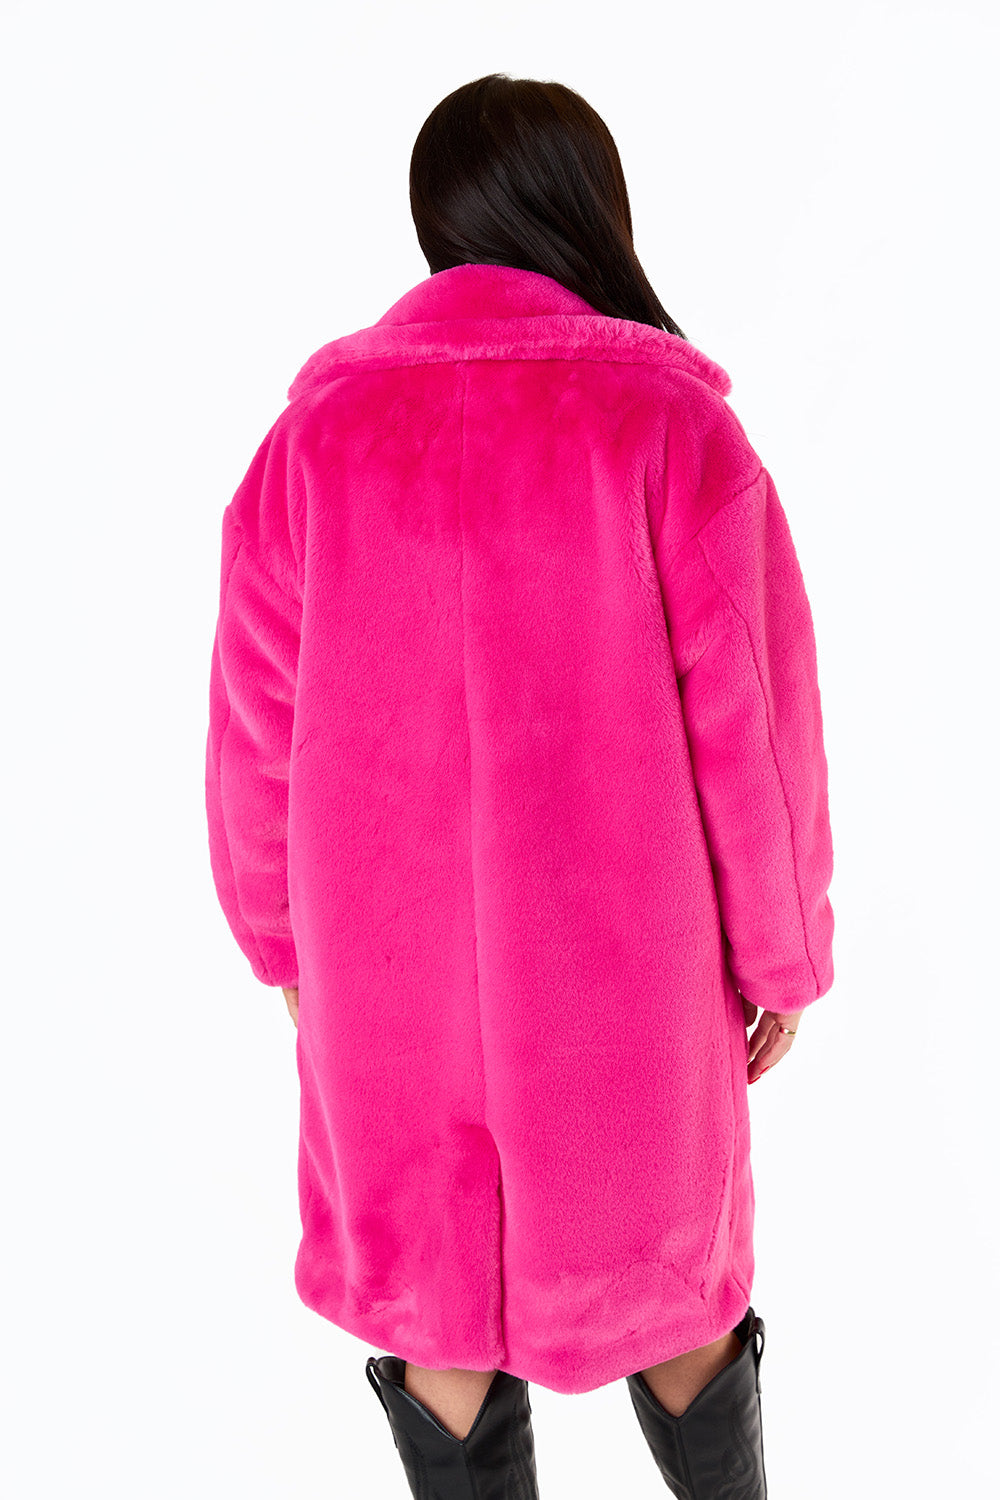 bisou lovelyleopard fur  pink